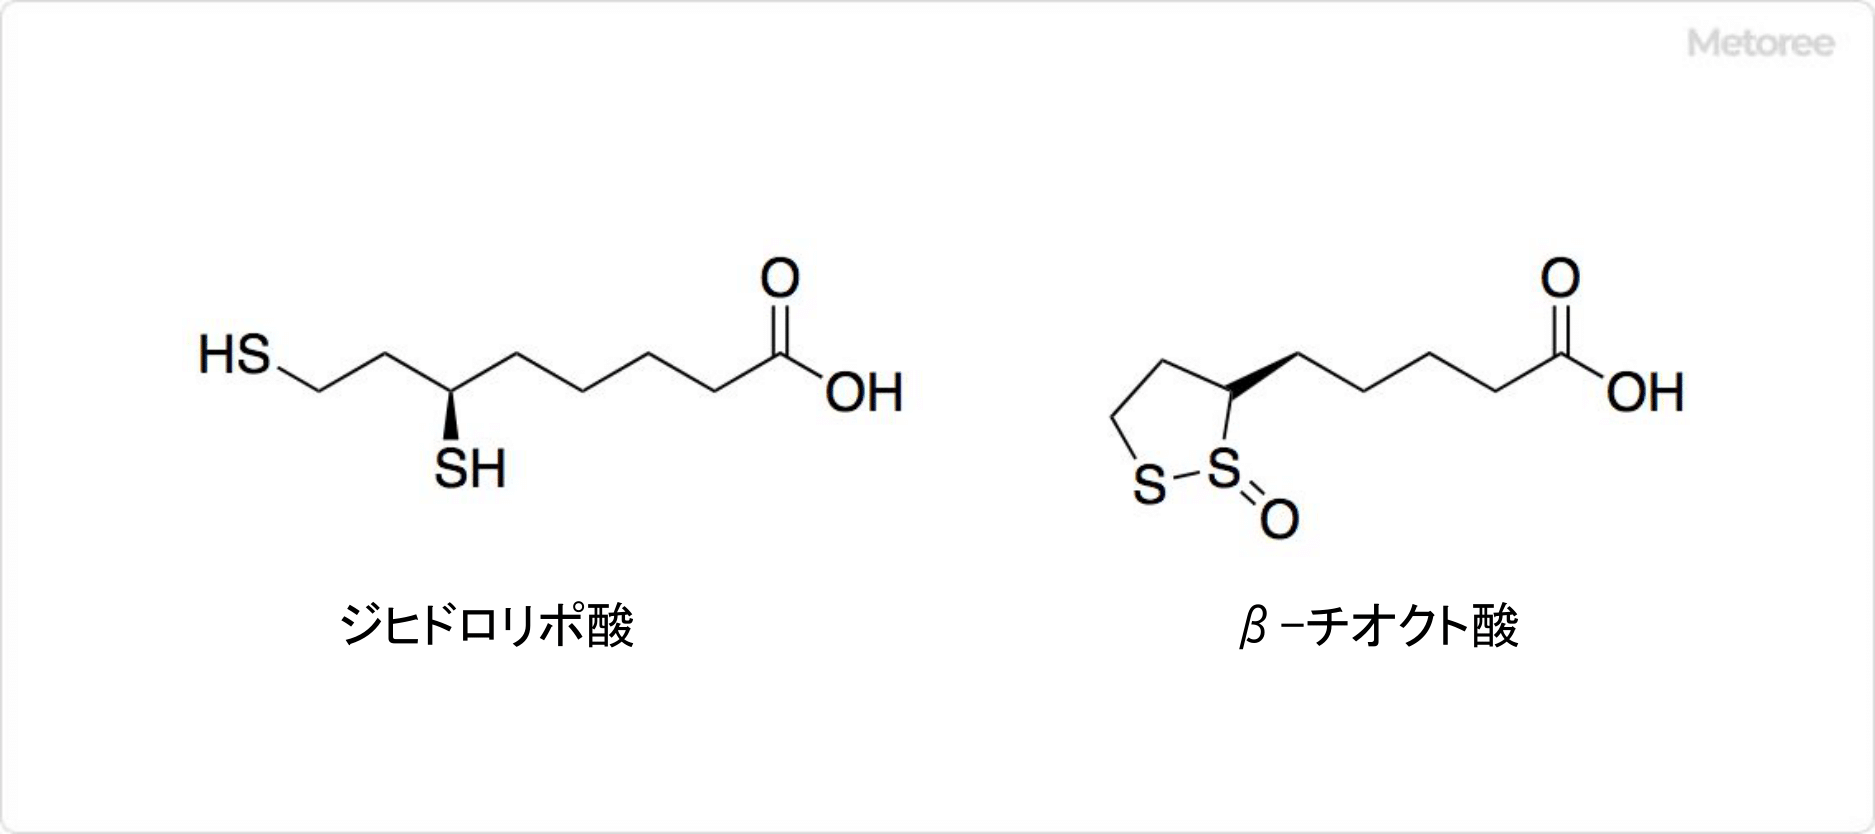 チオクト酸の関連化合物